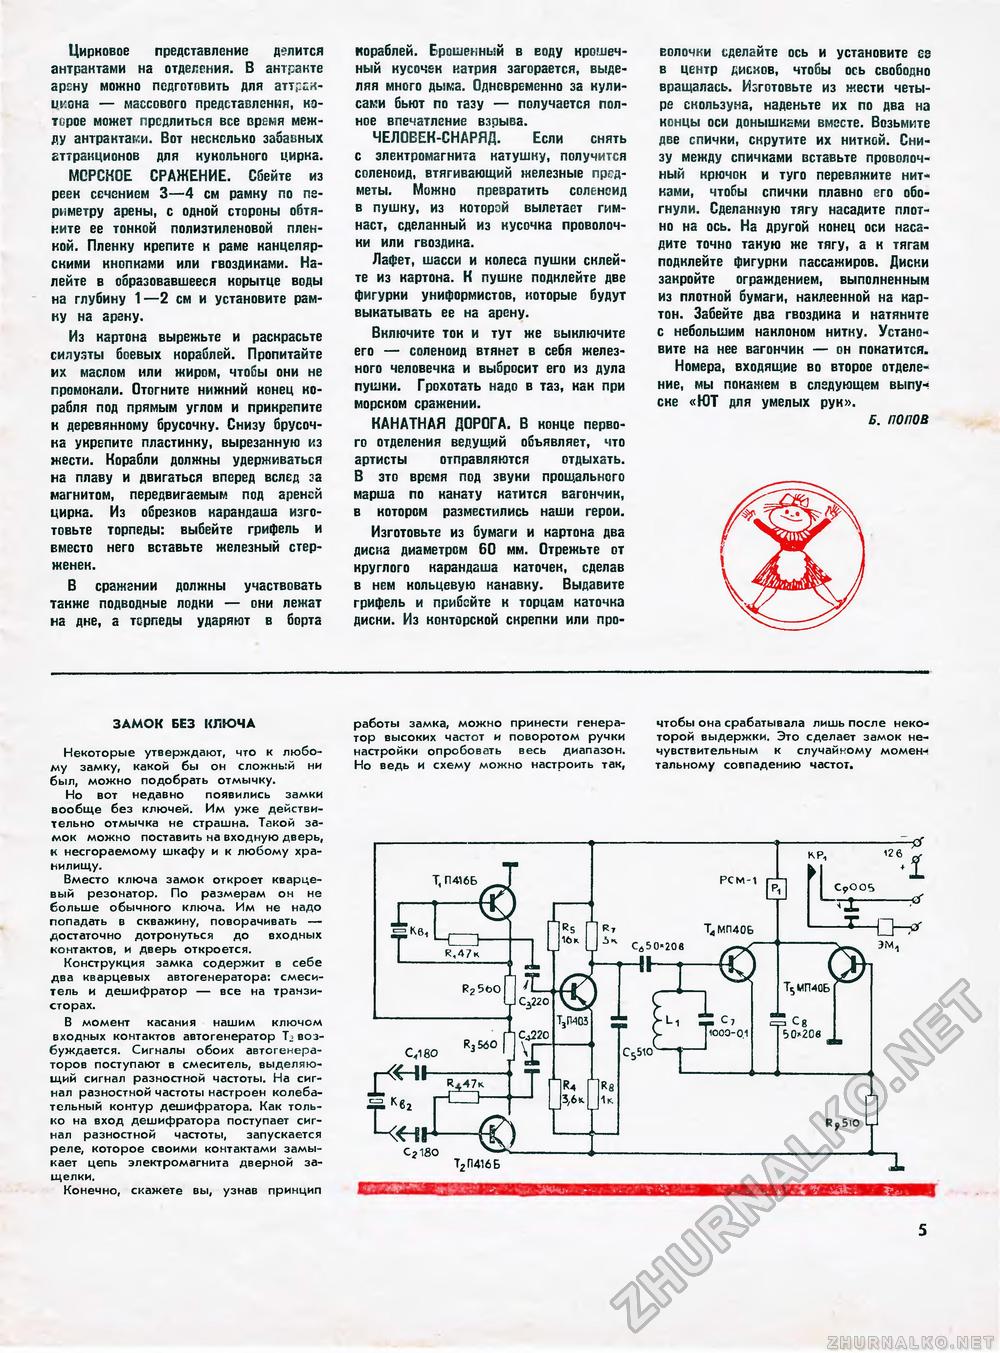 Юный техник - для умелых рук 1972-04, страница 5